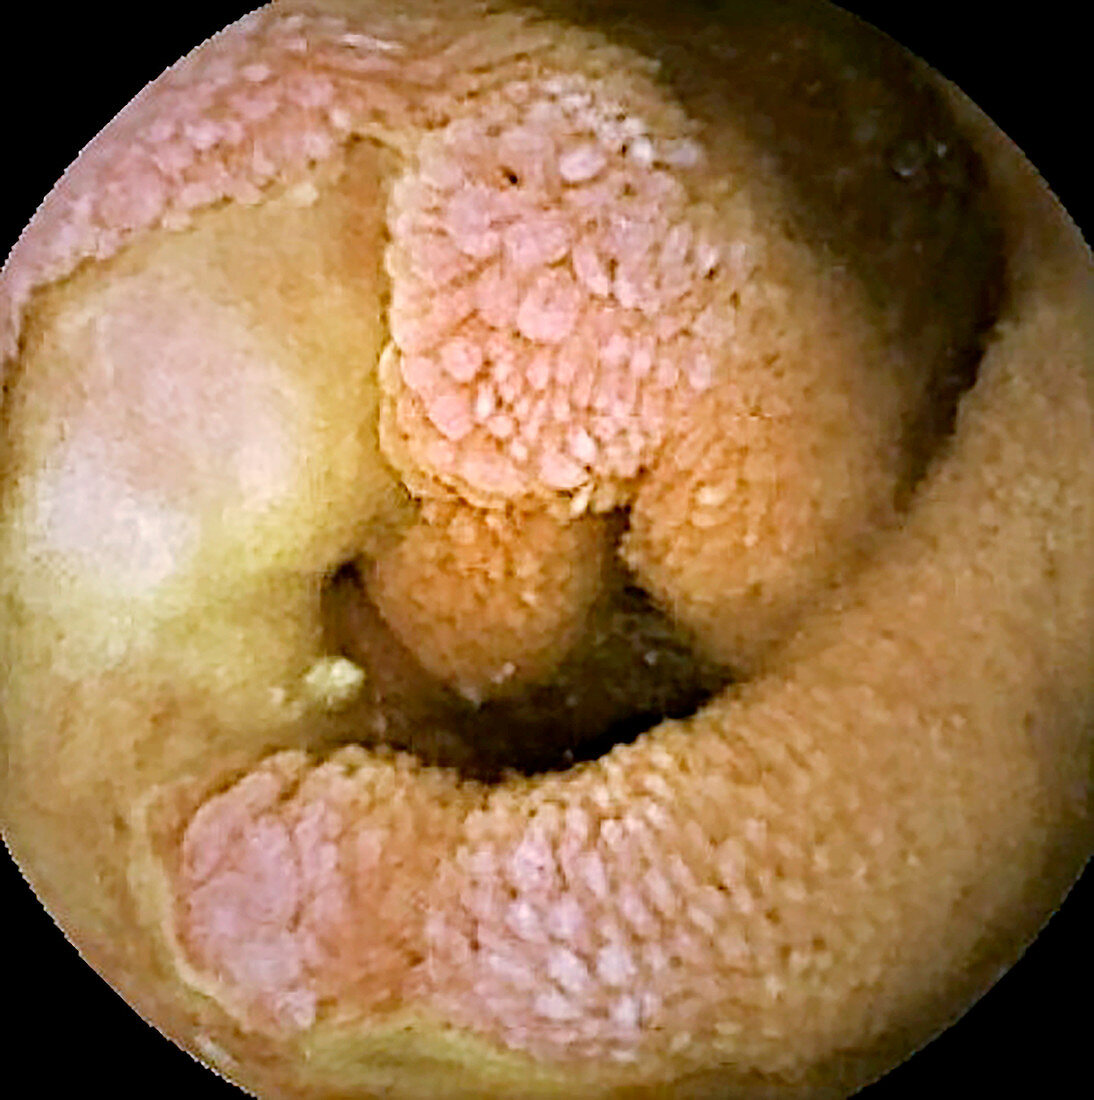 Small intestine in Crohn's disease, pill camera view